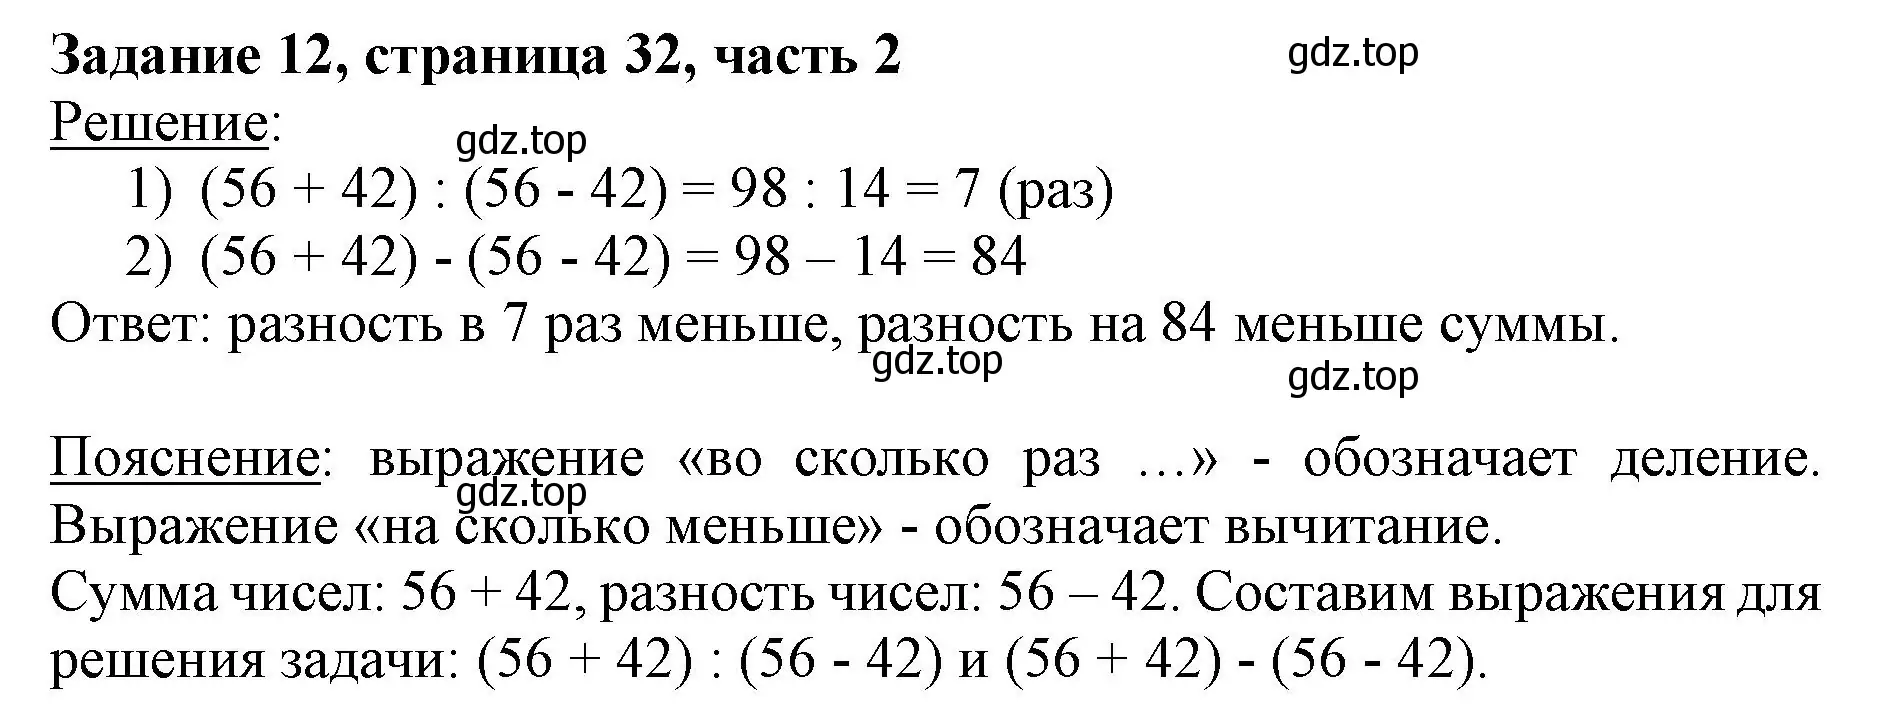 Решение номер 12 (страница 32) гдз по математике 3 класс Моро, Бантова, учебник 2 часть